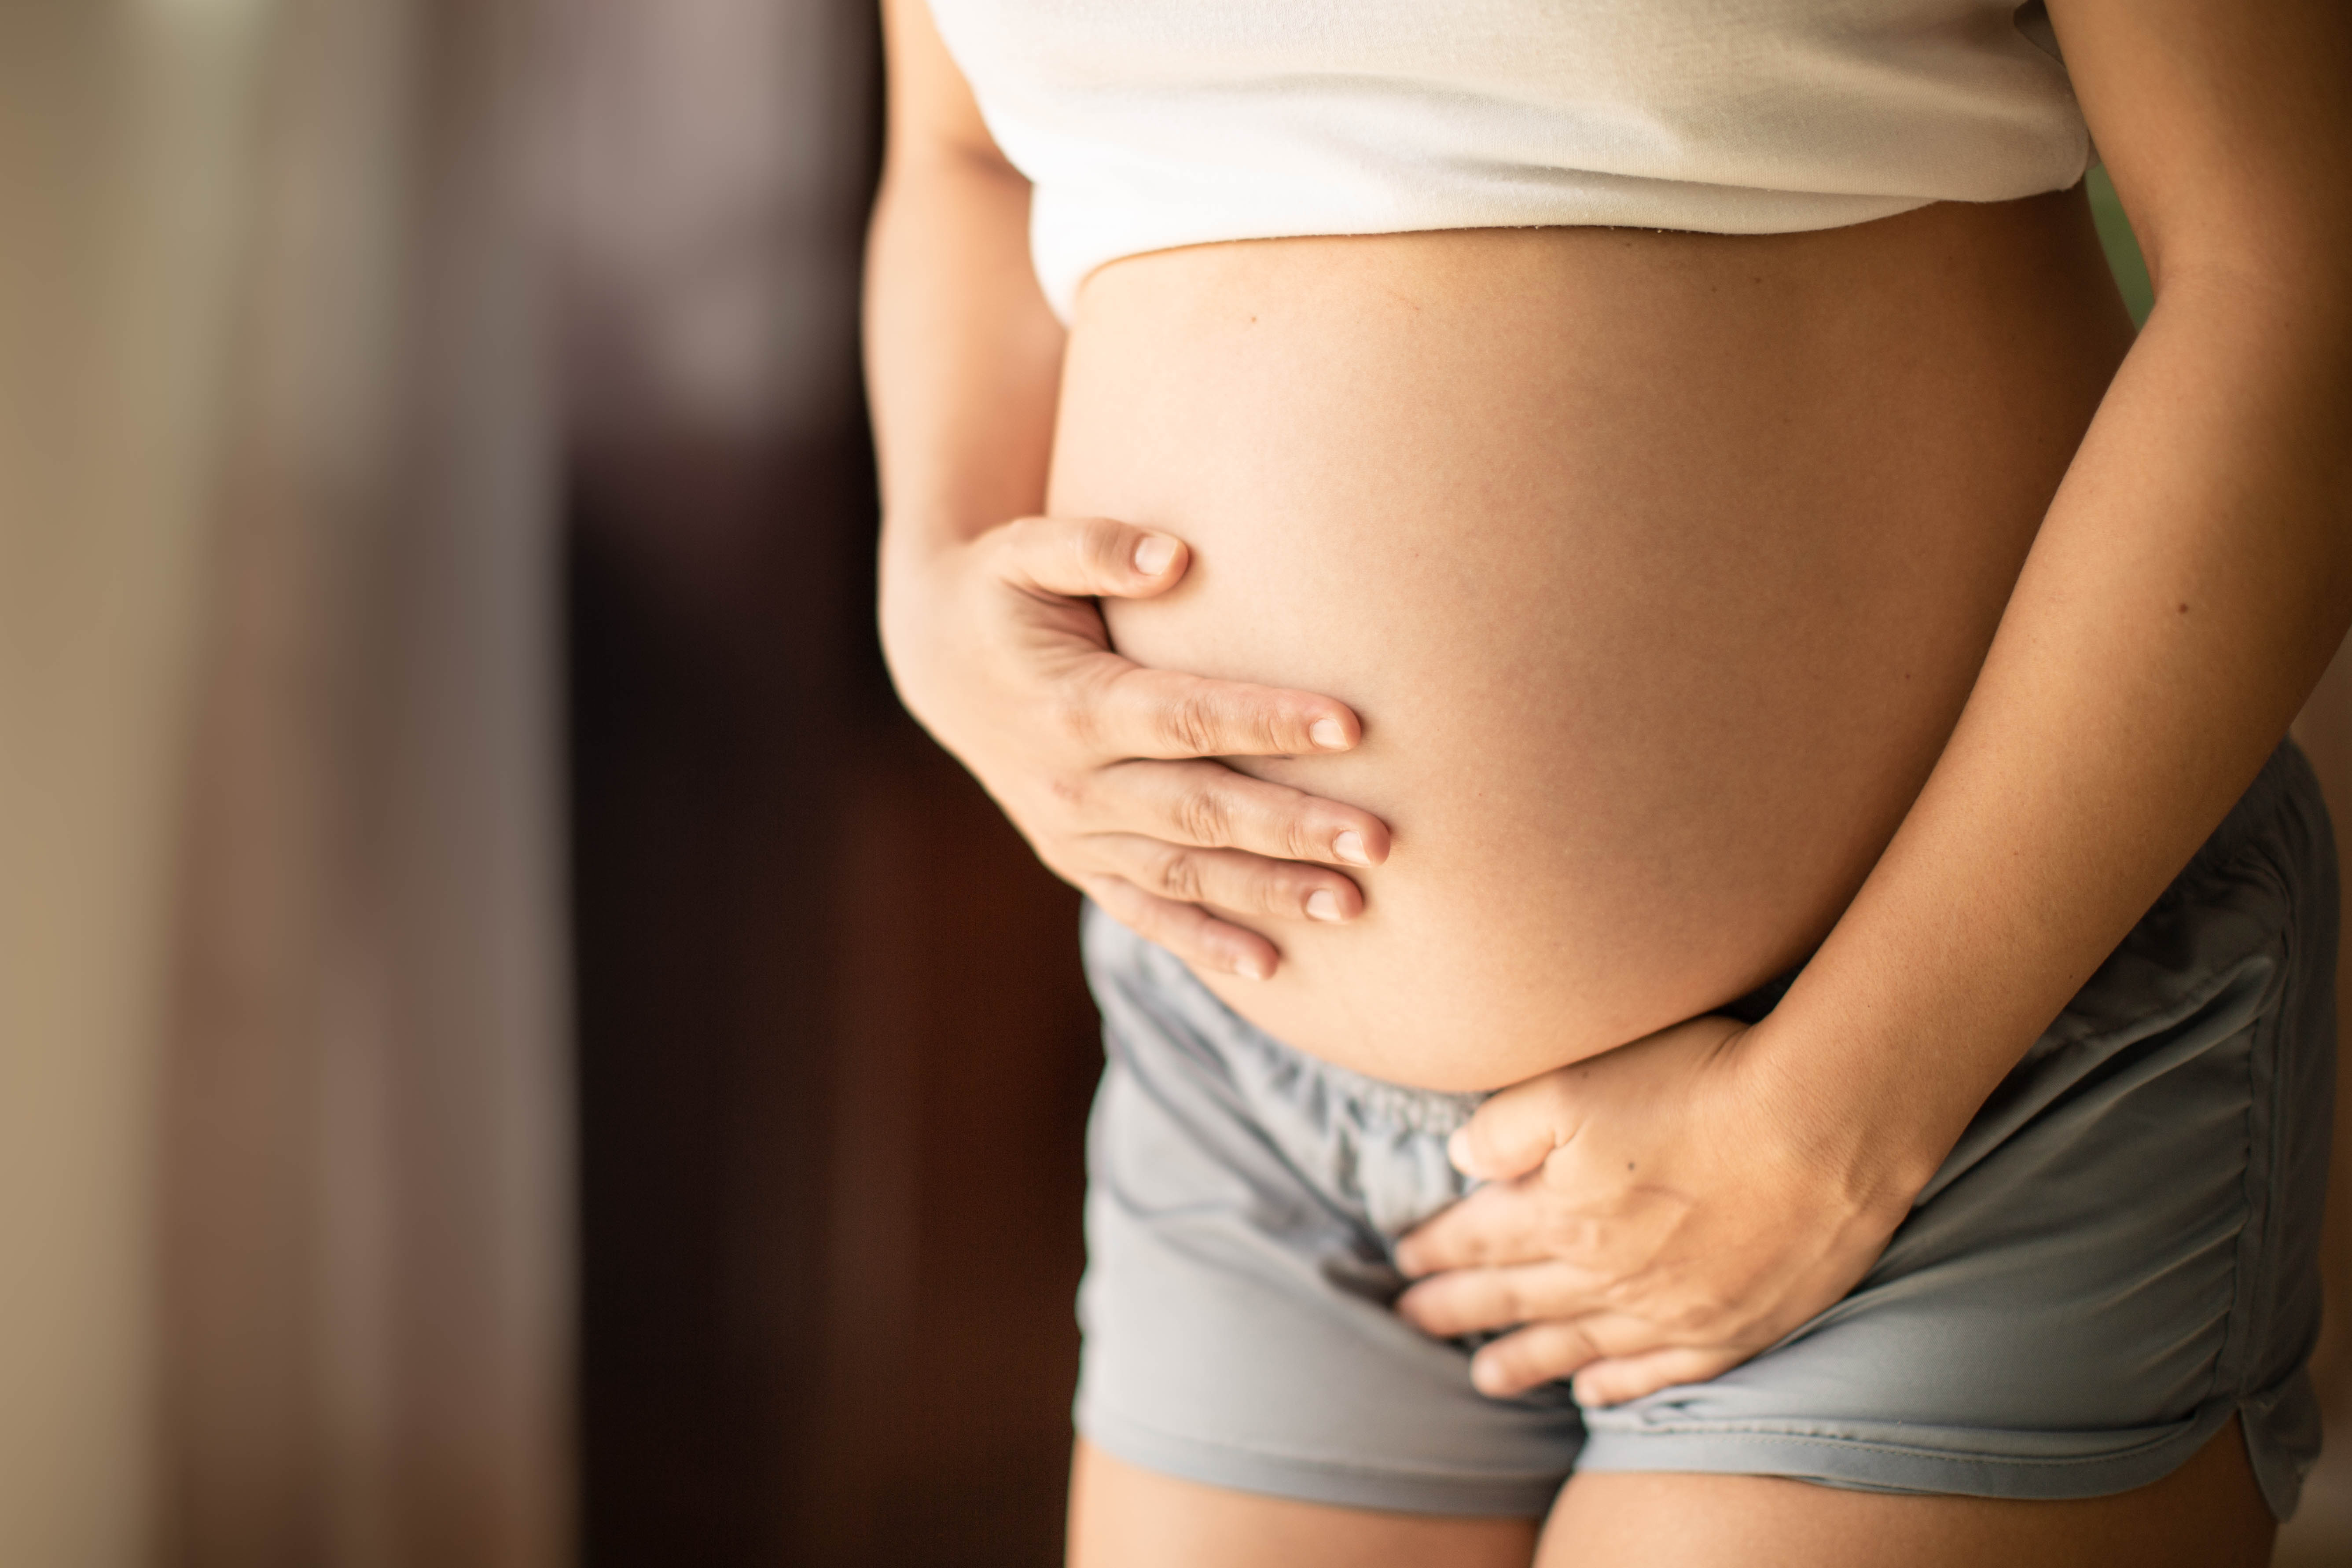 Hüvelyi folyás terhesség alatt: nem mindig jelez gondot! - Blikk